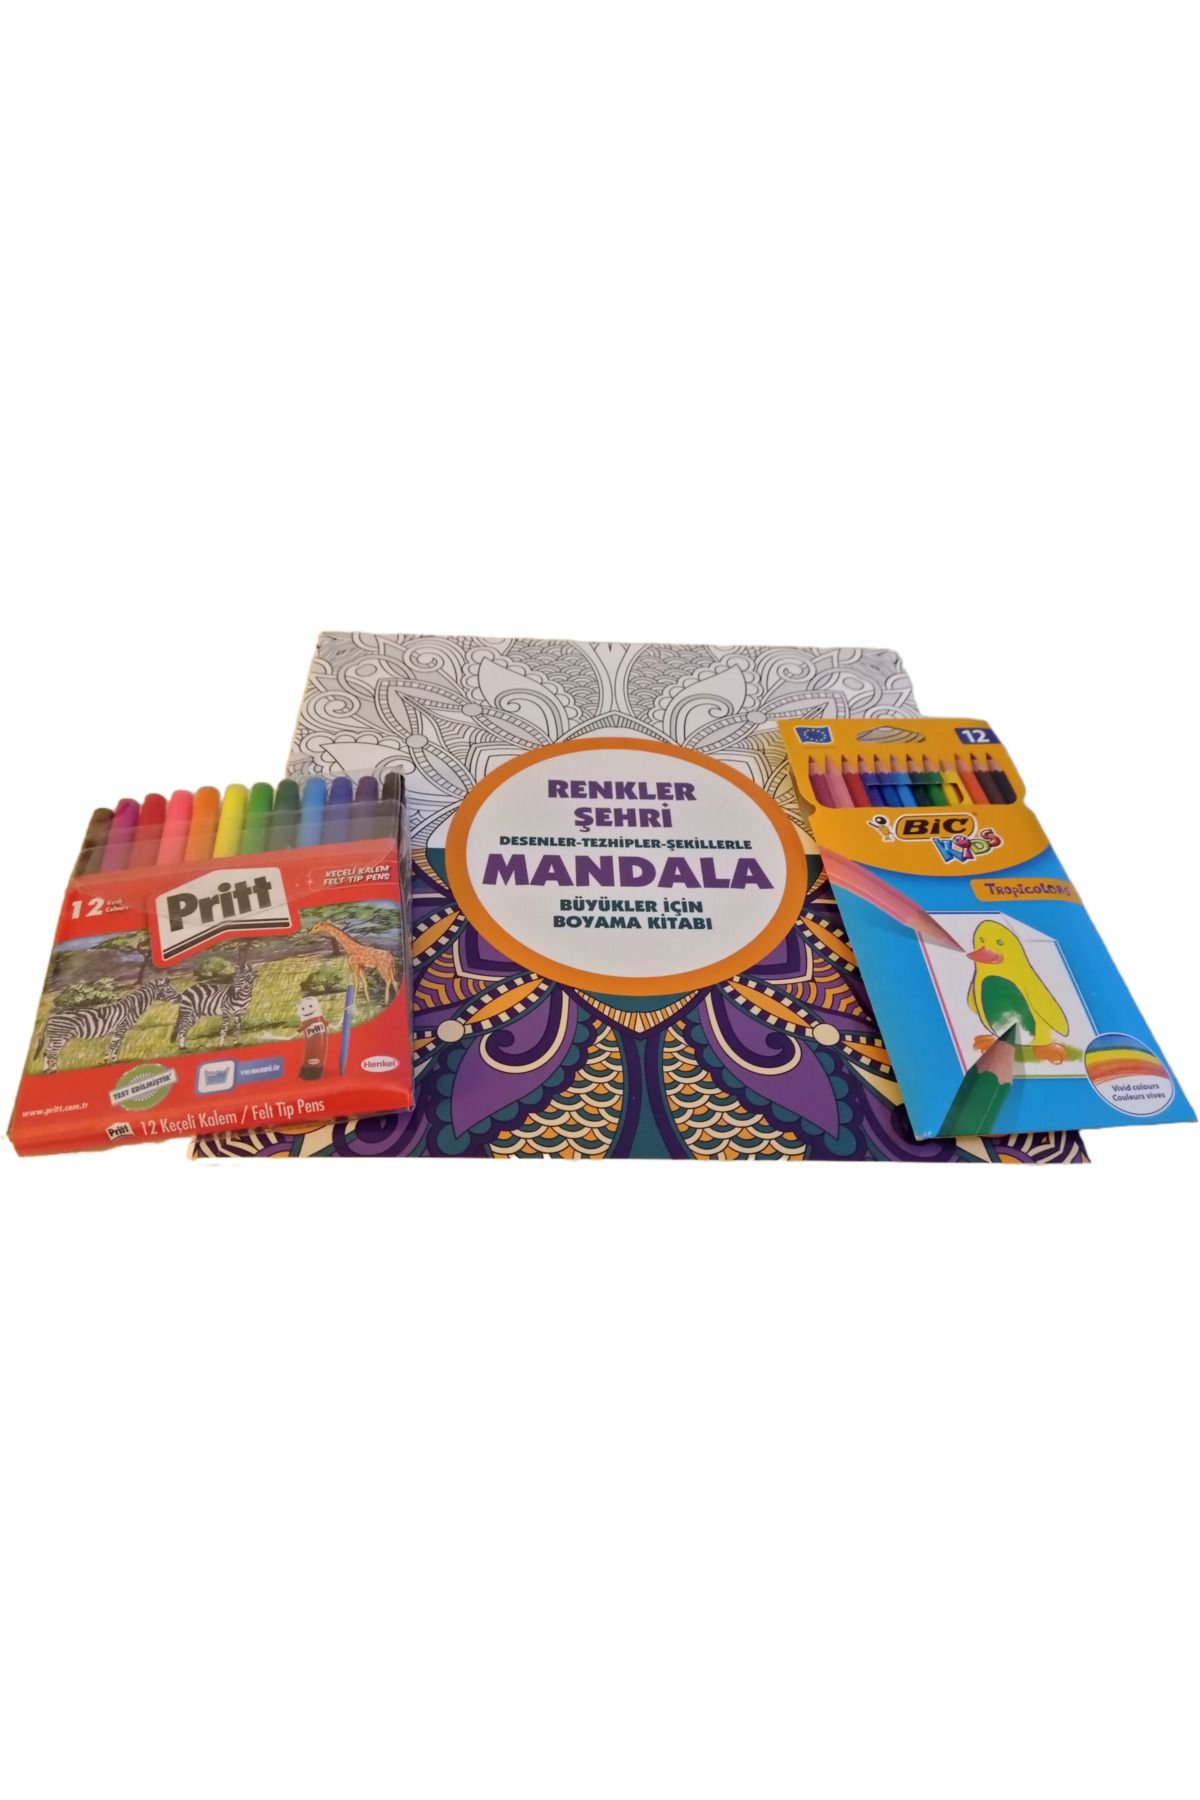 Pritt Boyama Kitabı Mandala Yetişkinler için Renkler Şehri Boyama Kitabı Keçeli Kalem ve Kuru Boya